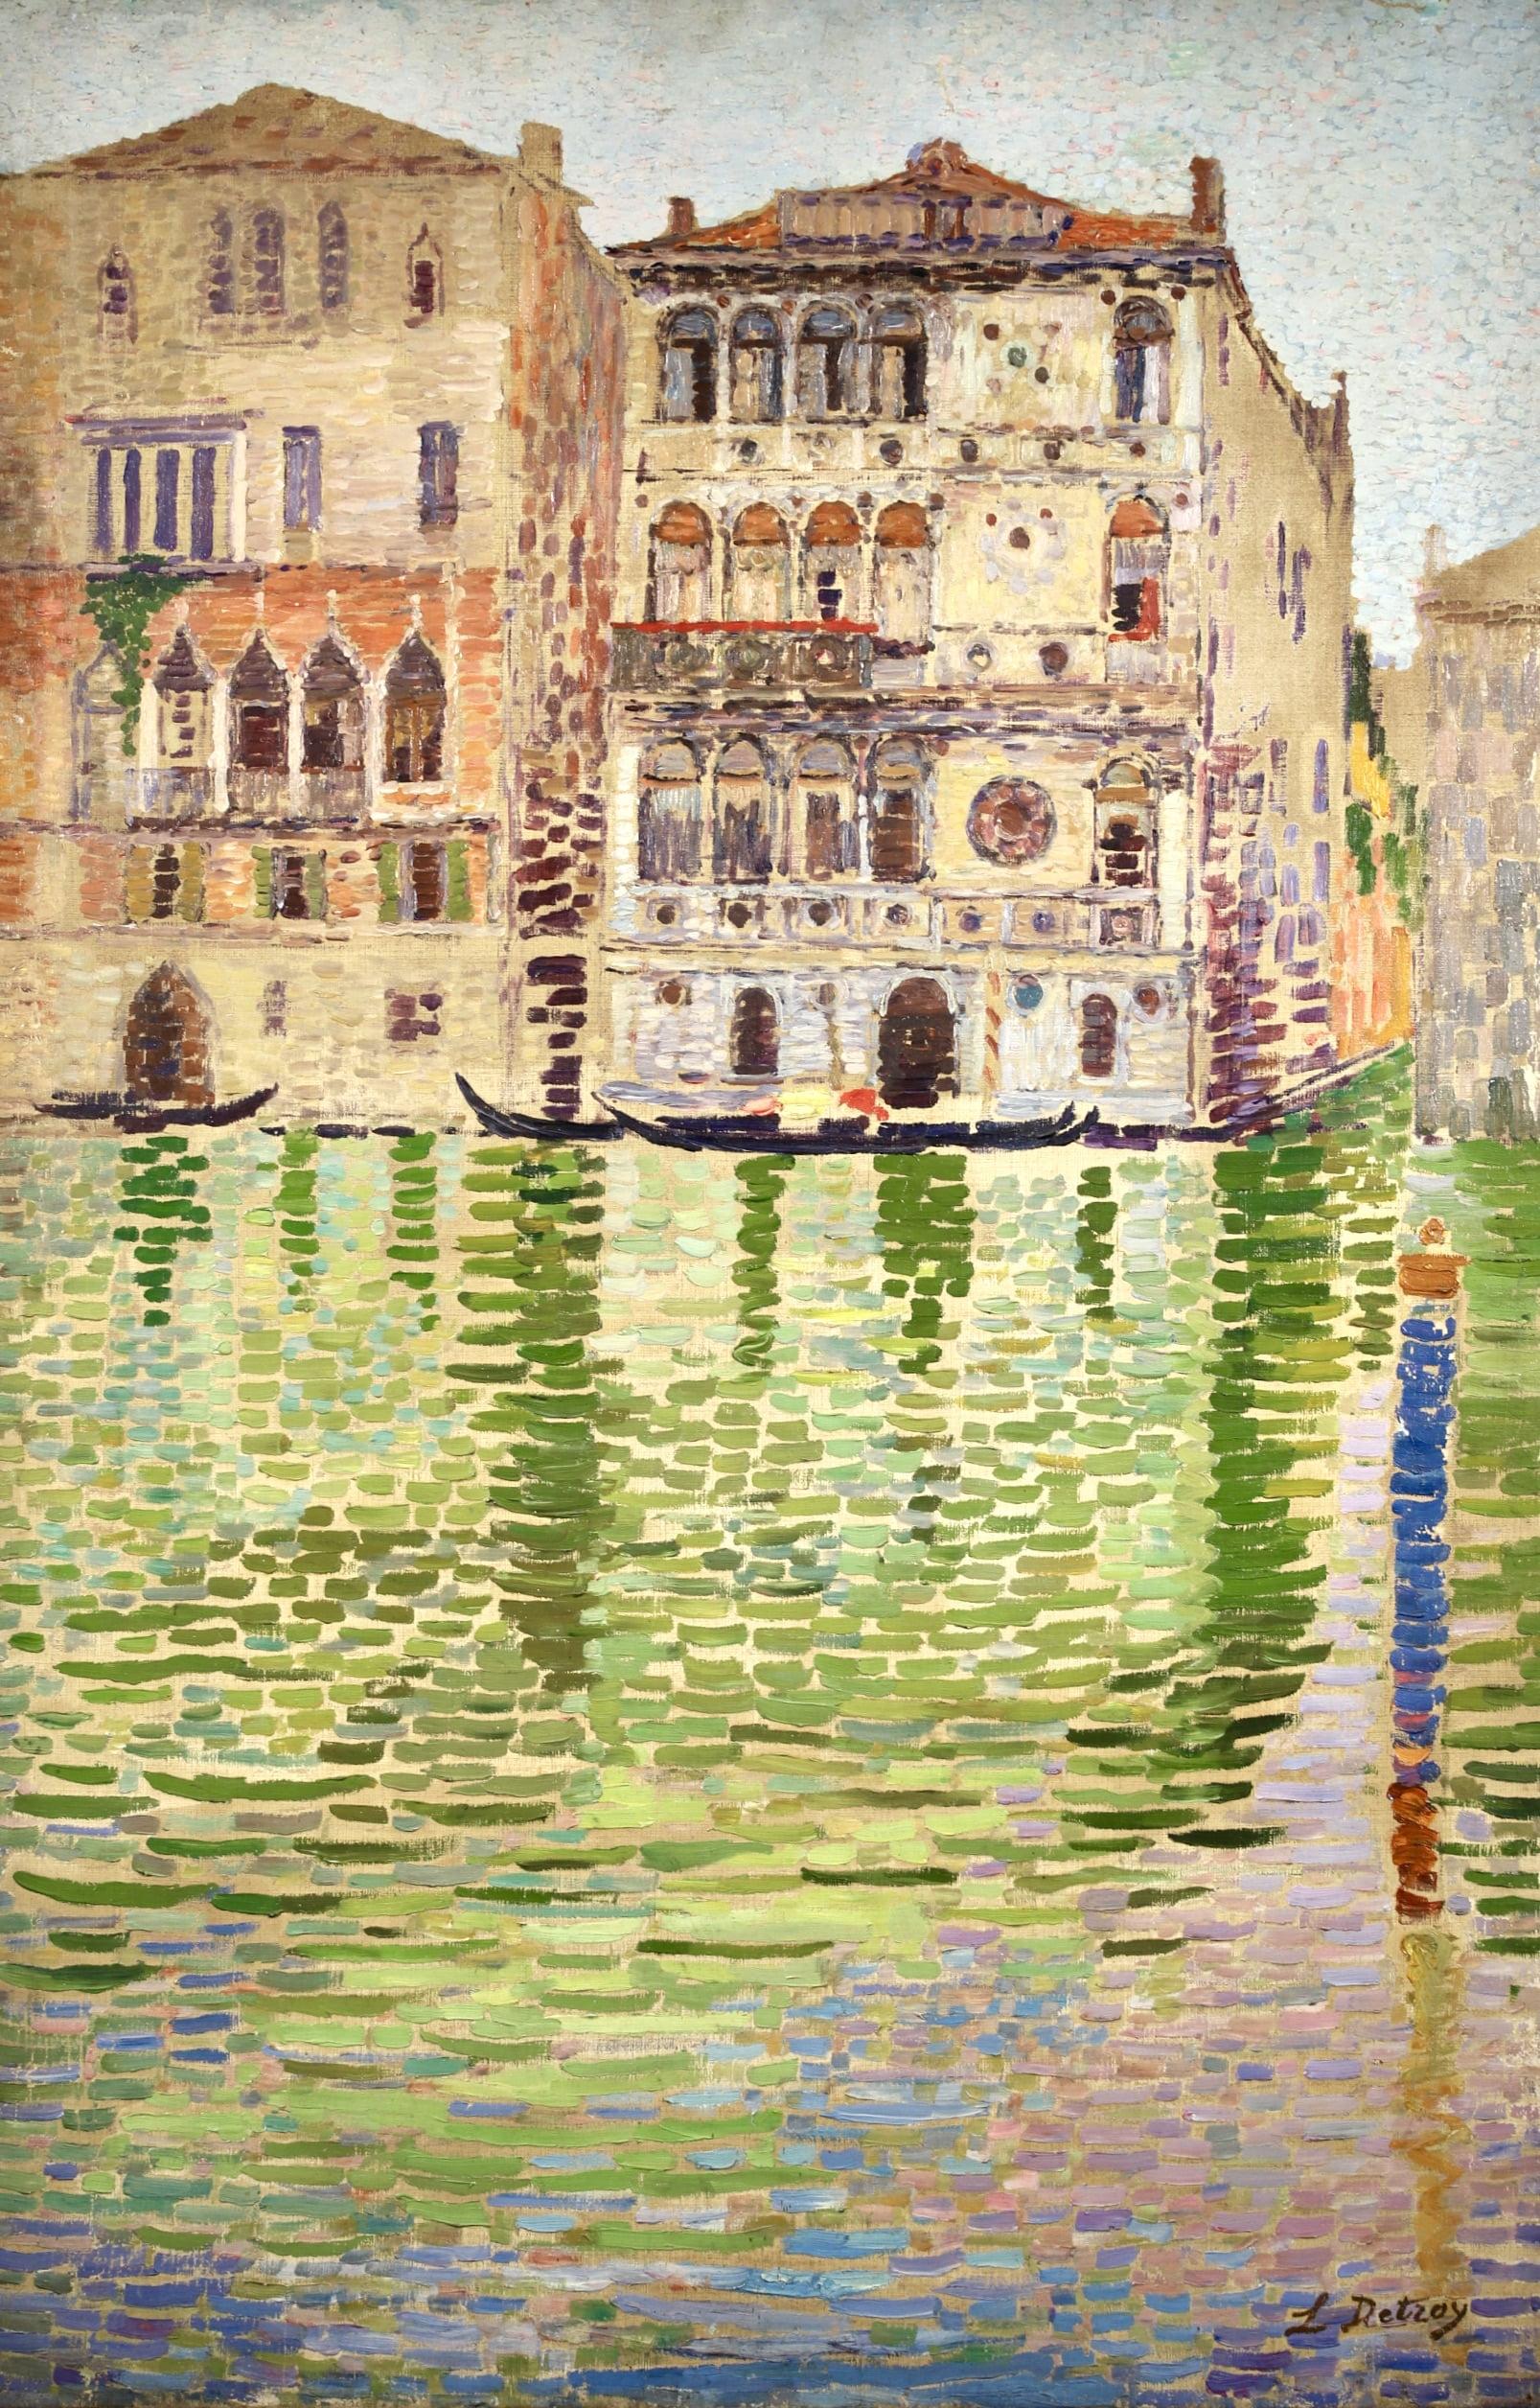 Huile de paysage sur toile signée, vers 1910, par le peintre post-impressionniste français Léon Detroy. Cette œuvre est peinte dans un style divisionniste et représente une vue de gondoles sur le canal de Venise. 

Signature :
Signée en bas à droite